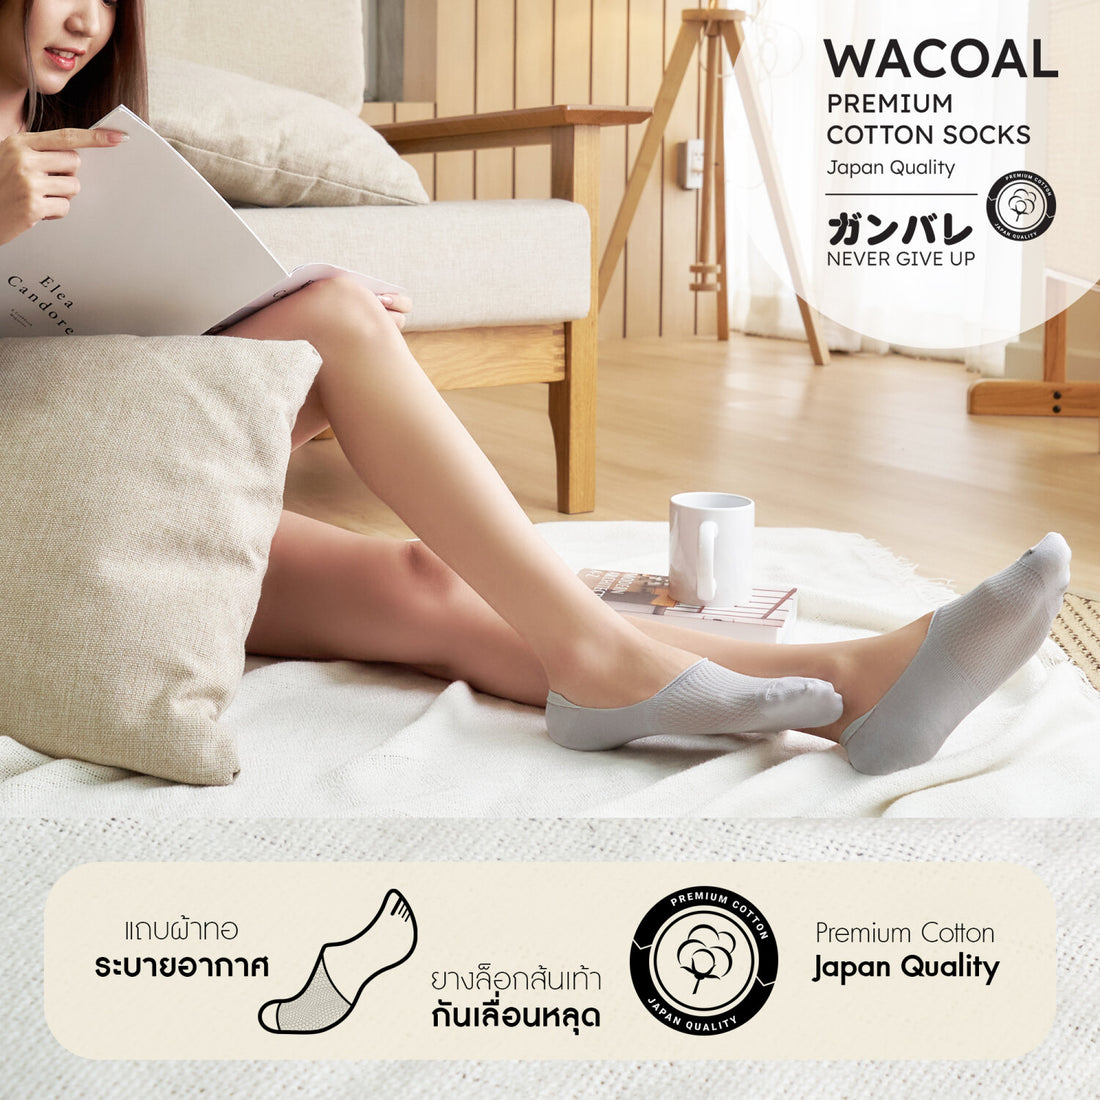 ถุงเท้าซ่อนข้อ ถุงเท้าข้อเว้า Premium Cotton Socks Selected by Wacoal รุ่น WW110400 สีเทา (LI)